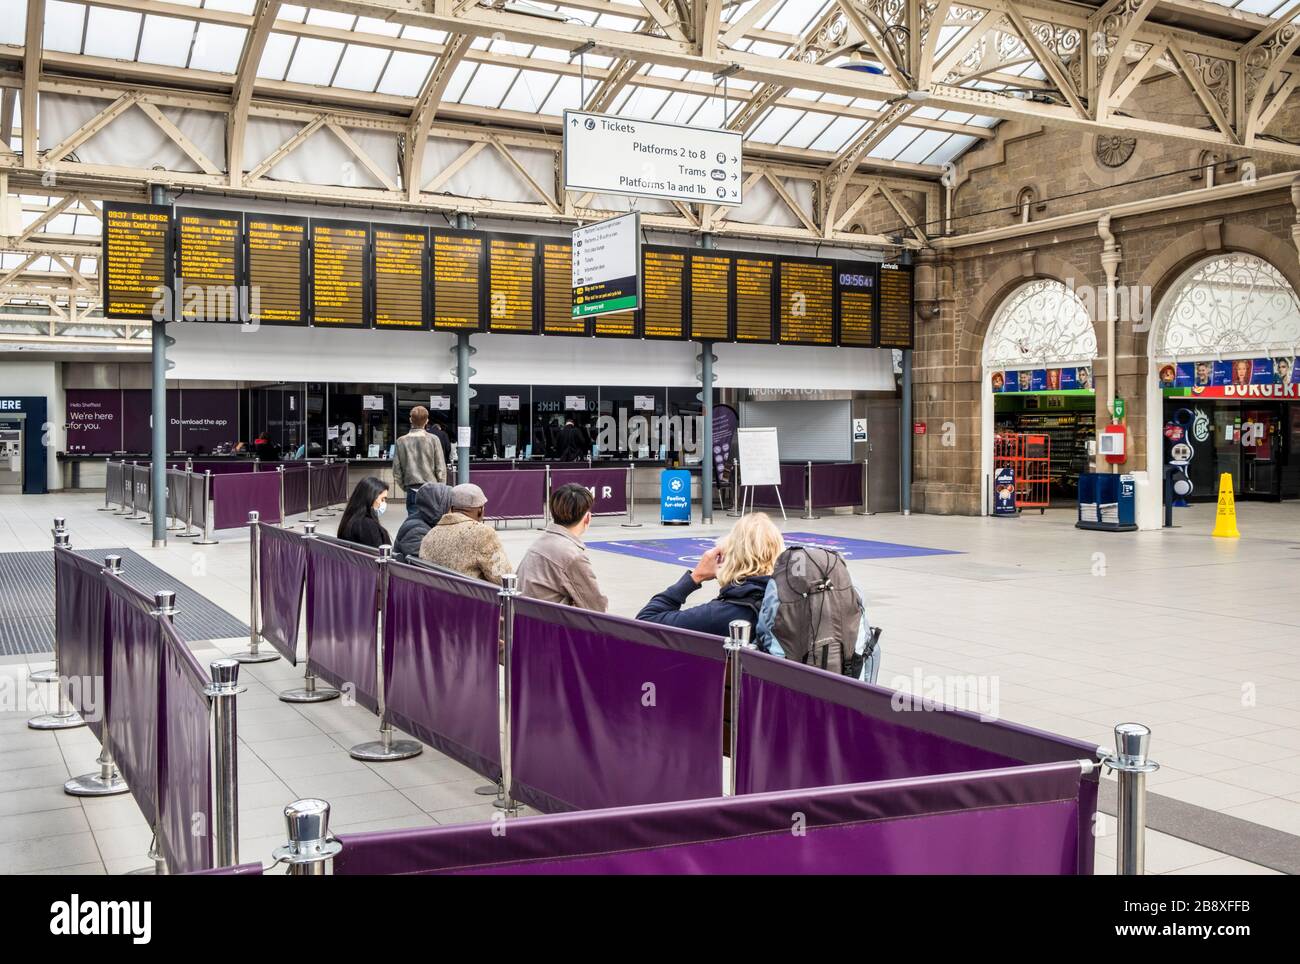 Wirkung von Coronavirus Covid-19 auf Reisen. Viel weniger Leute am Bahnhof Sheffield, wenn es normalerweise beschäftigt wäre. Sheffield, England, Großbritannien Stockfoto